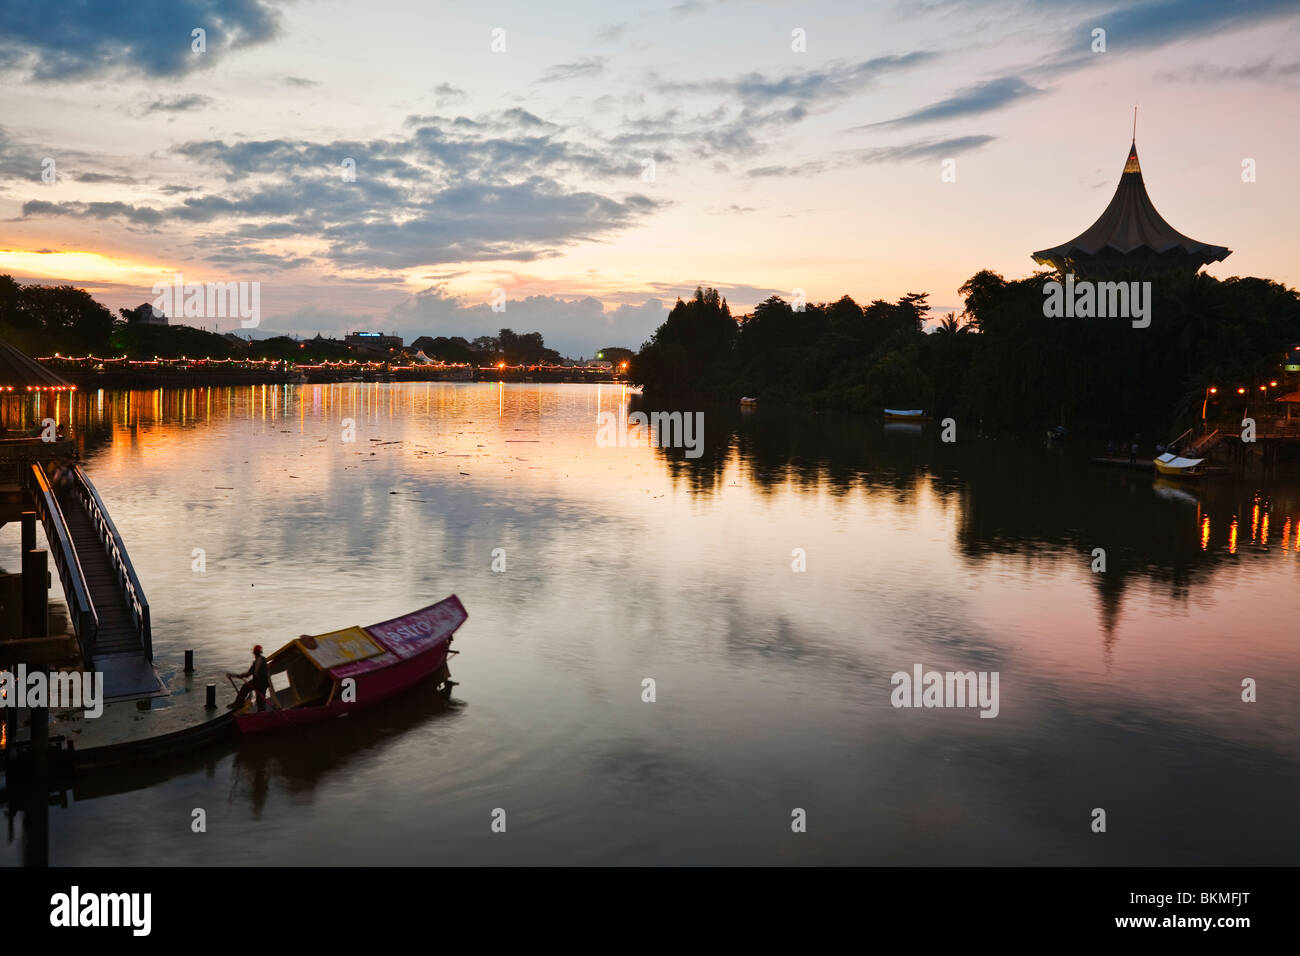 Crépuscule sur la rivière Sarawak et front de mer. Kuching, Sarawak, Bornéo, Malaisie. Banque D'Images